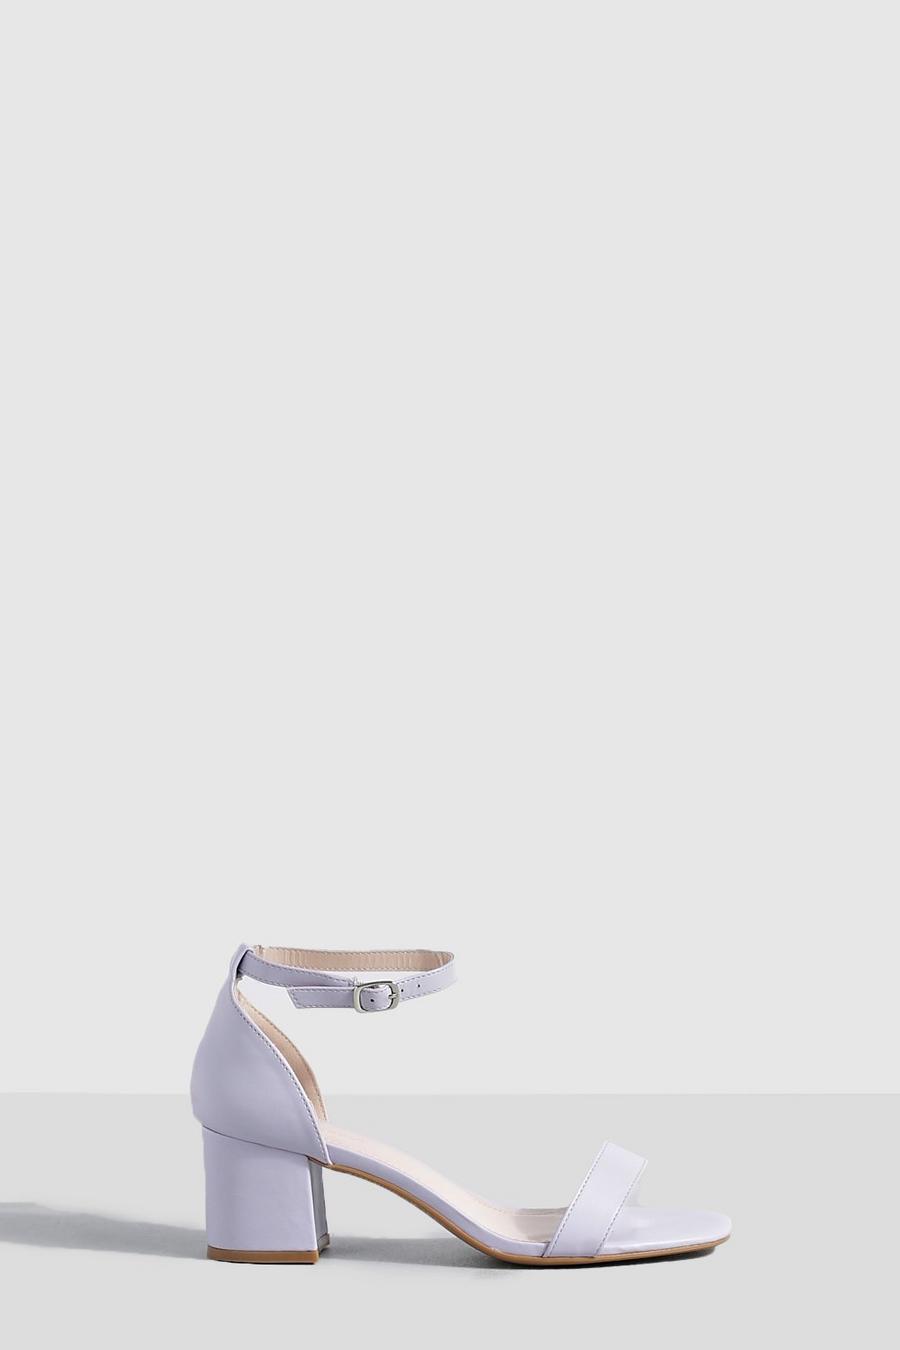 Scarpe effetto nudo con tacco basso a blocco, Lilac